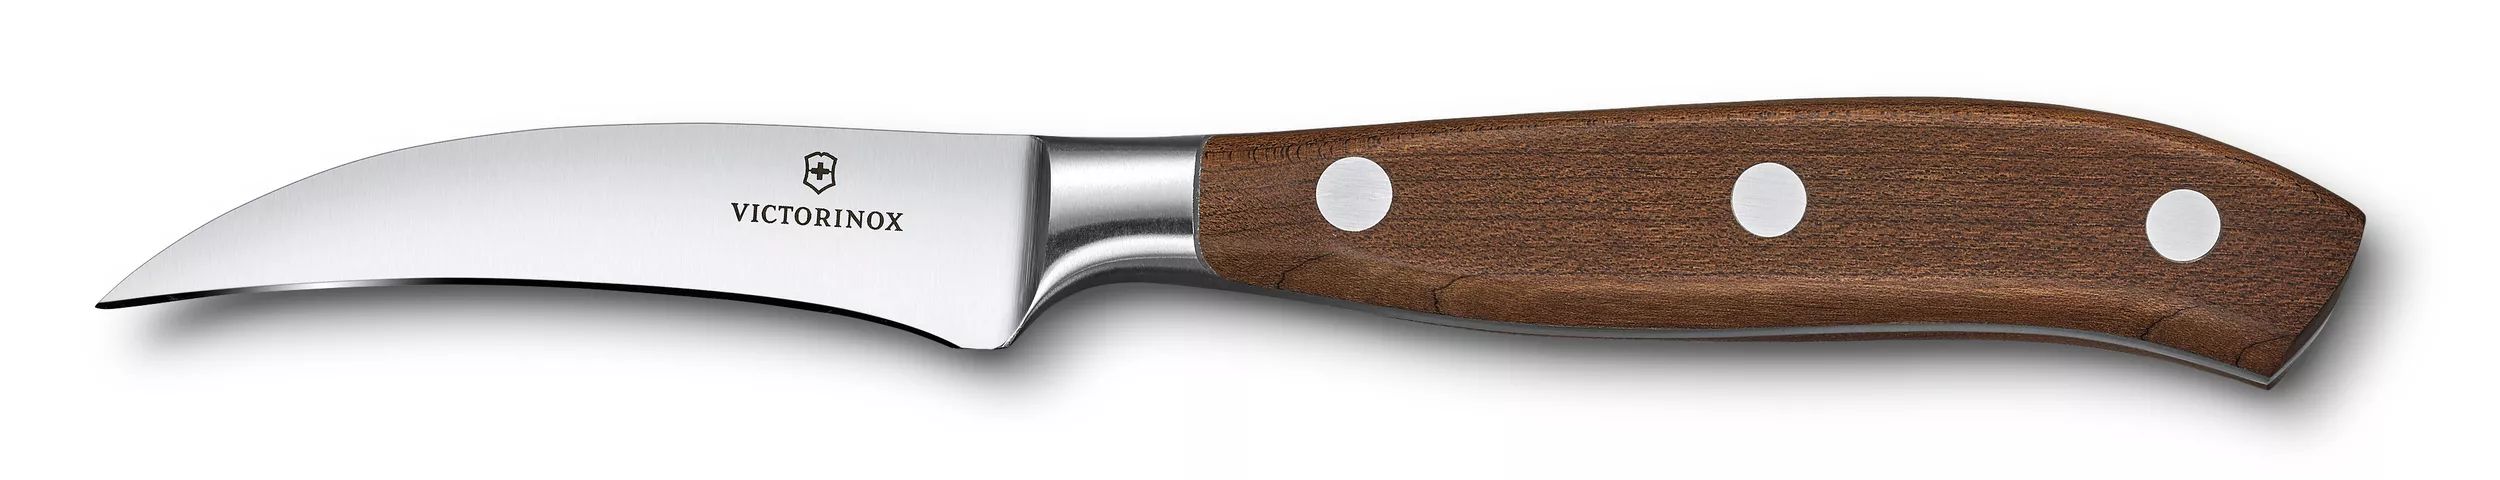 「グランメートル ウッド」シェーピングナイフ-7.7300.08G